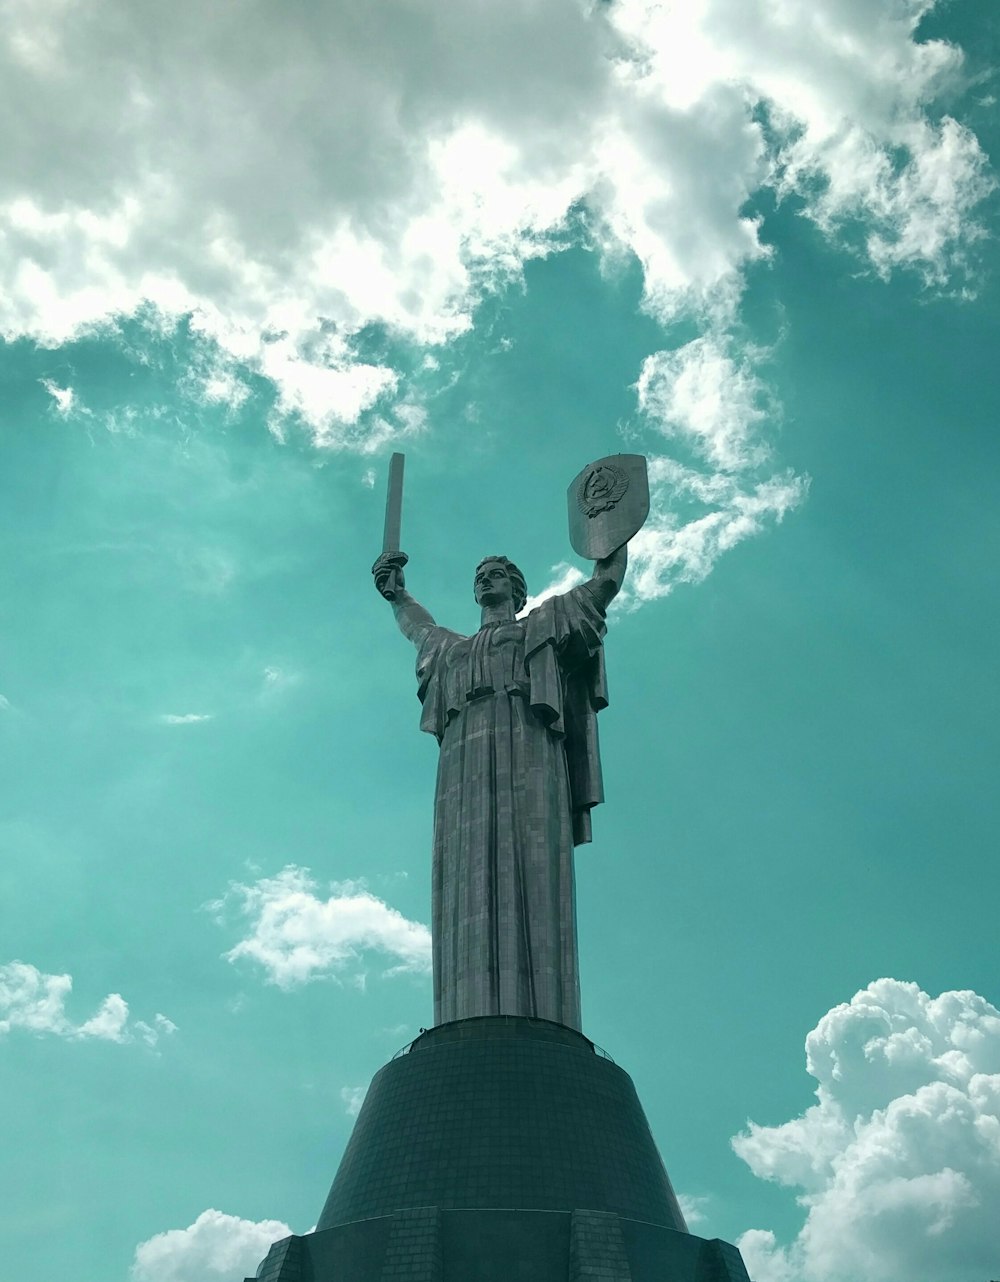 Denkmal des Vaterlandes, Ukraine